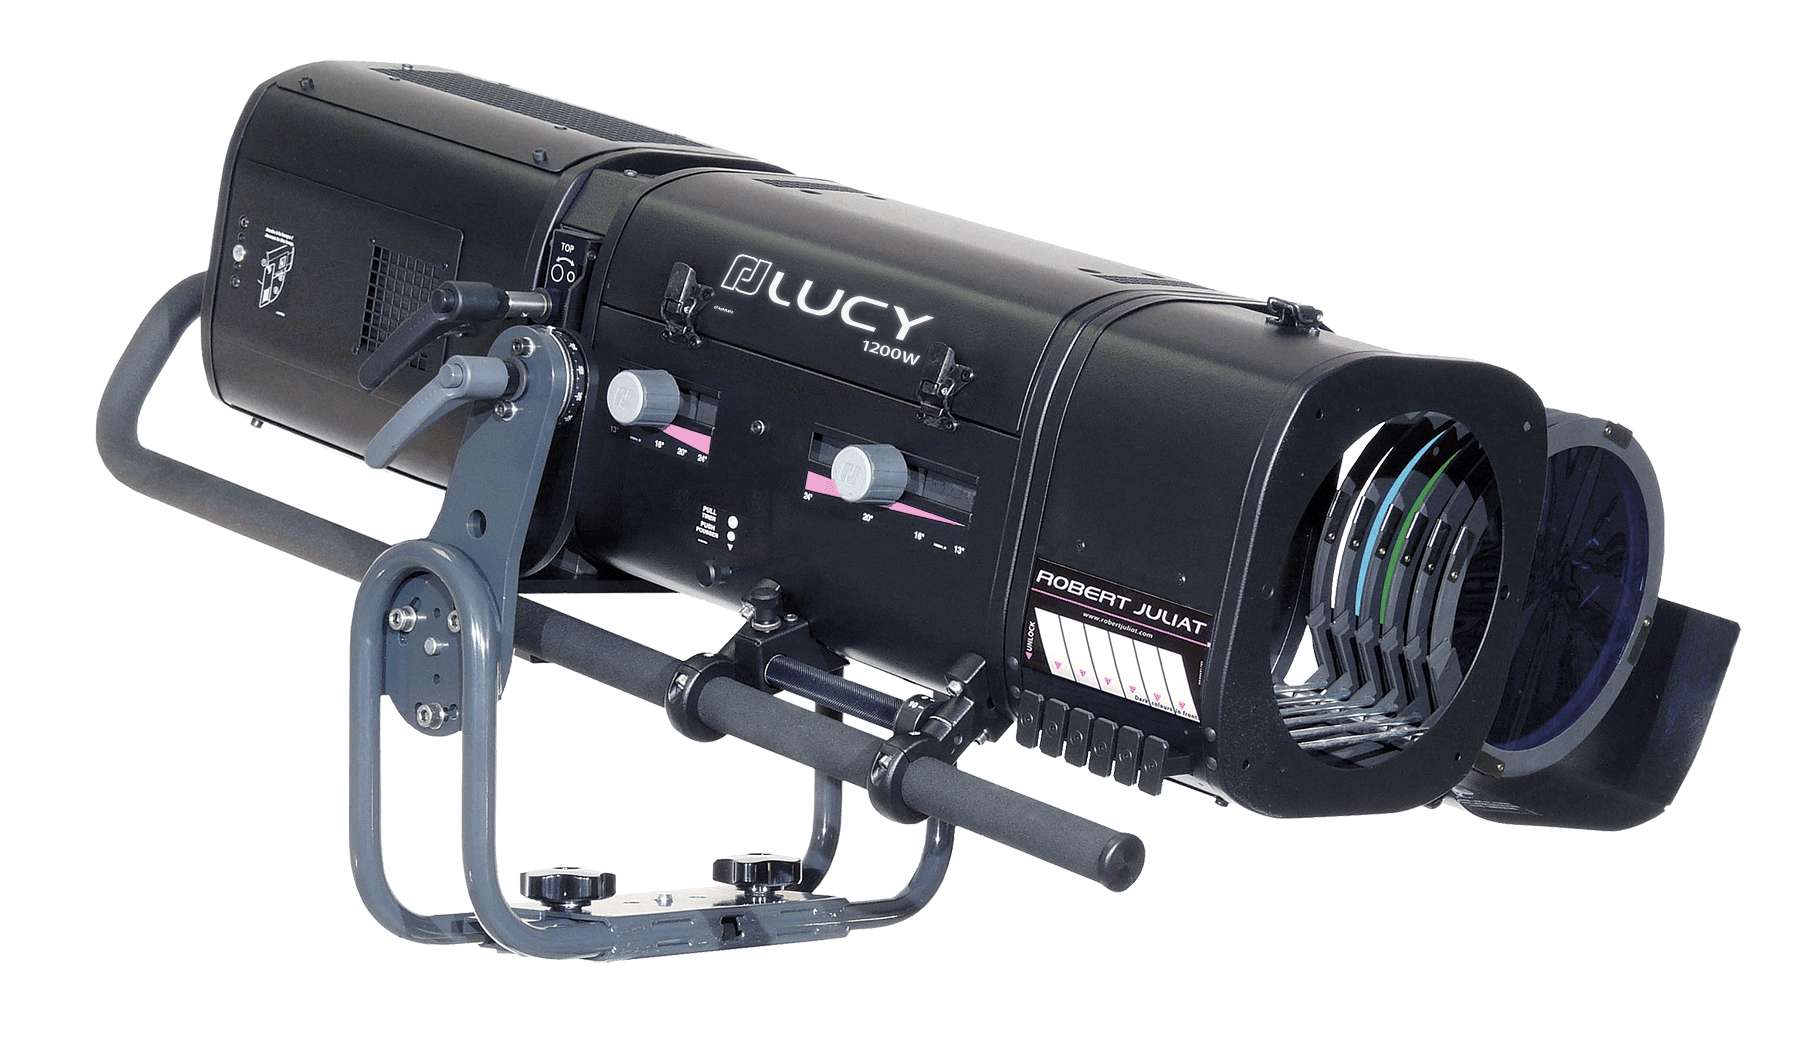 LUCY 1200W HMI - Compact Range Followspot